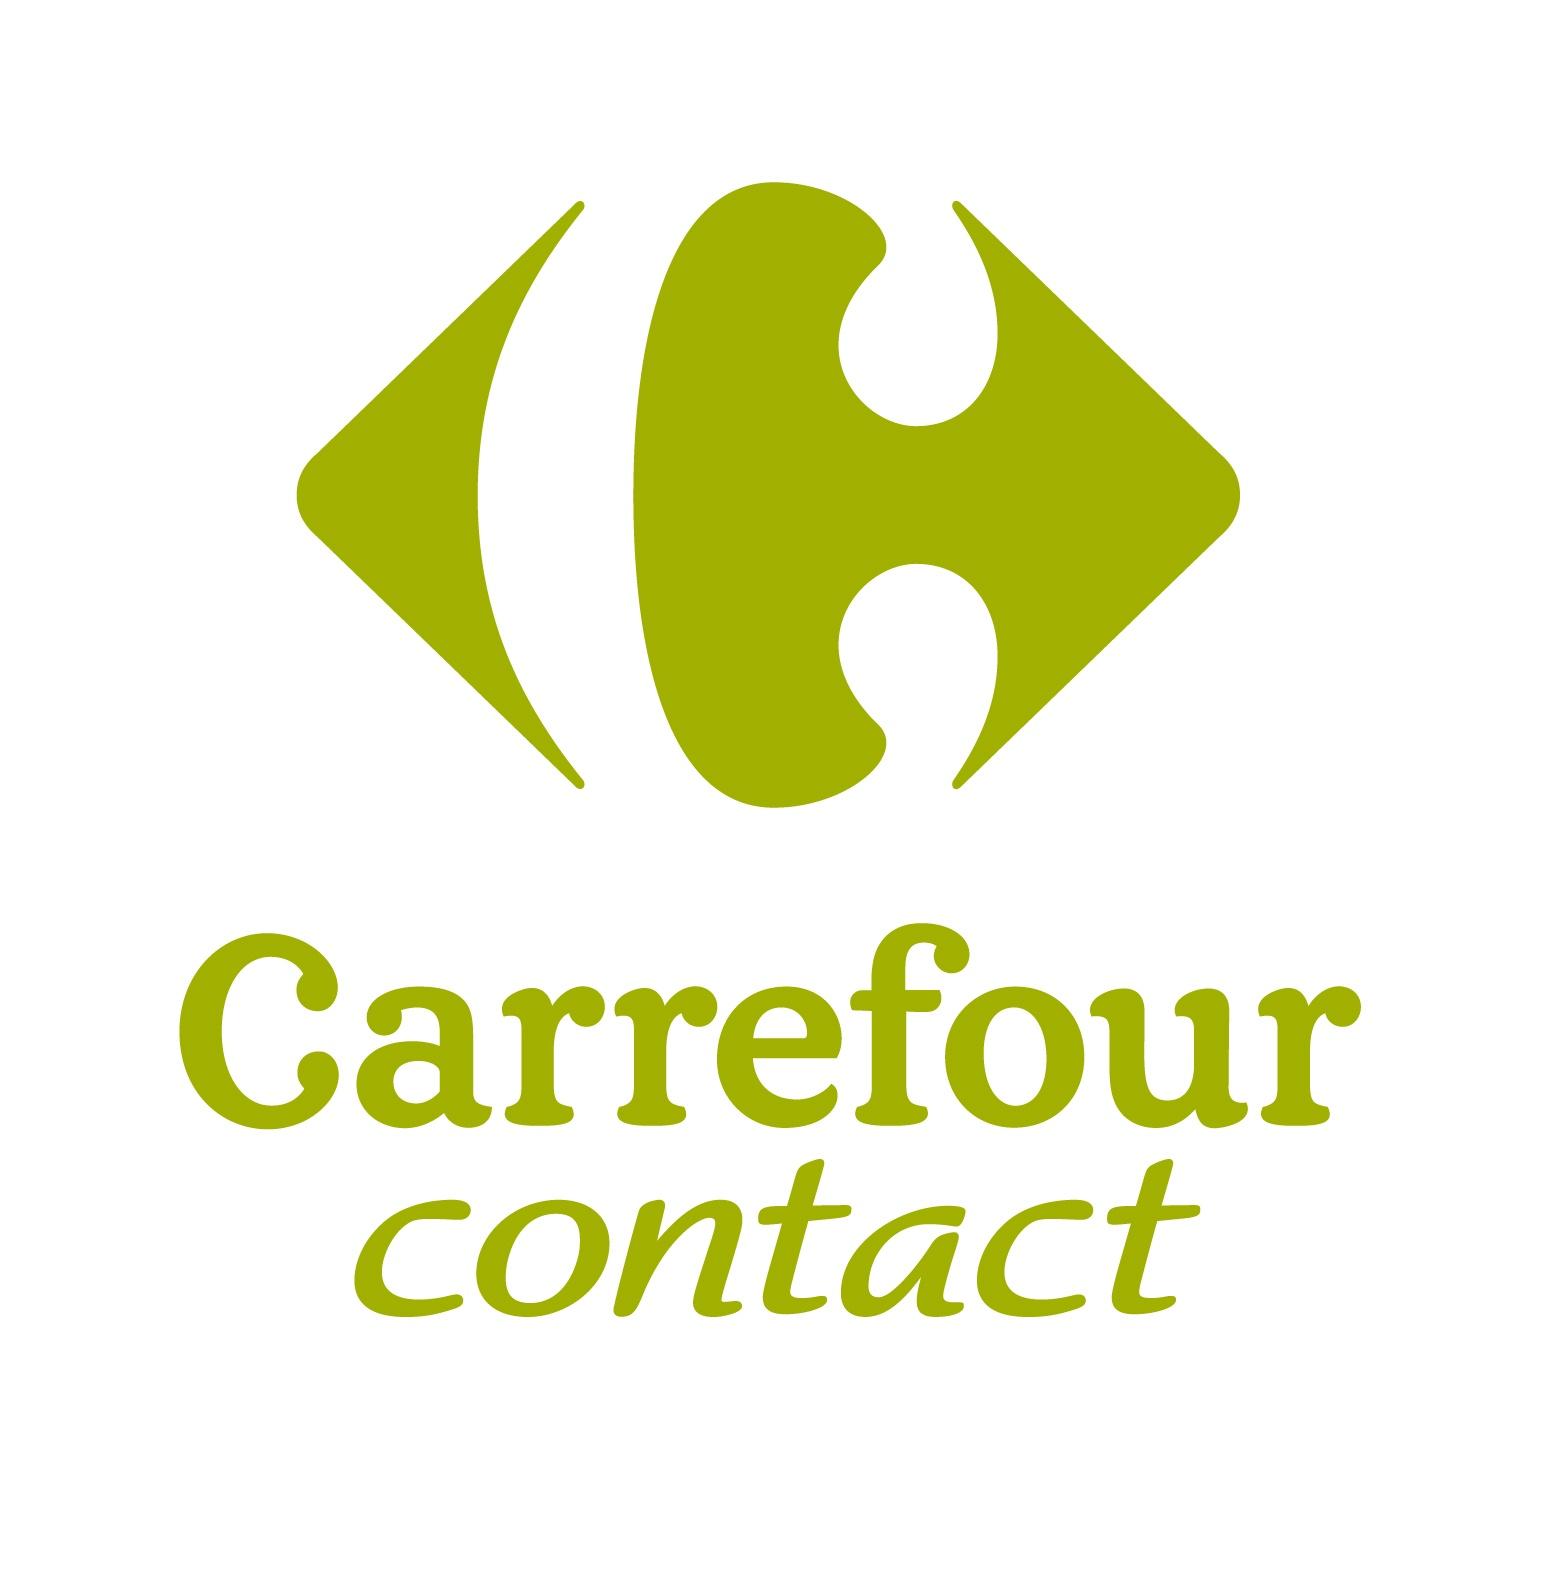 Carrefour Contact Riom